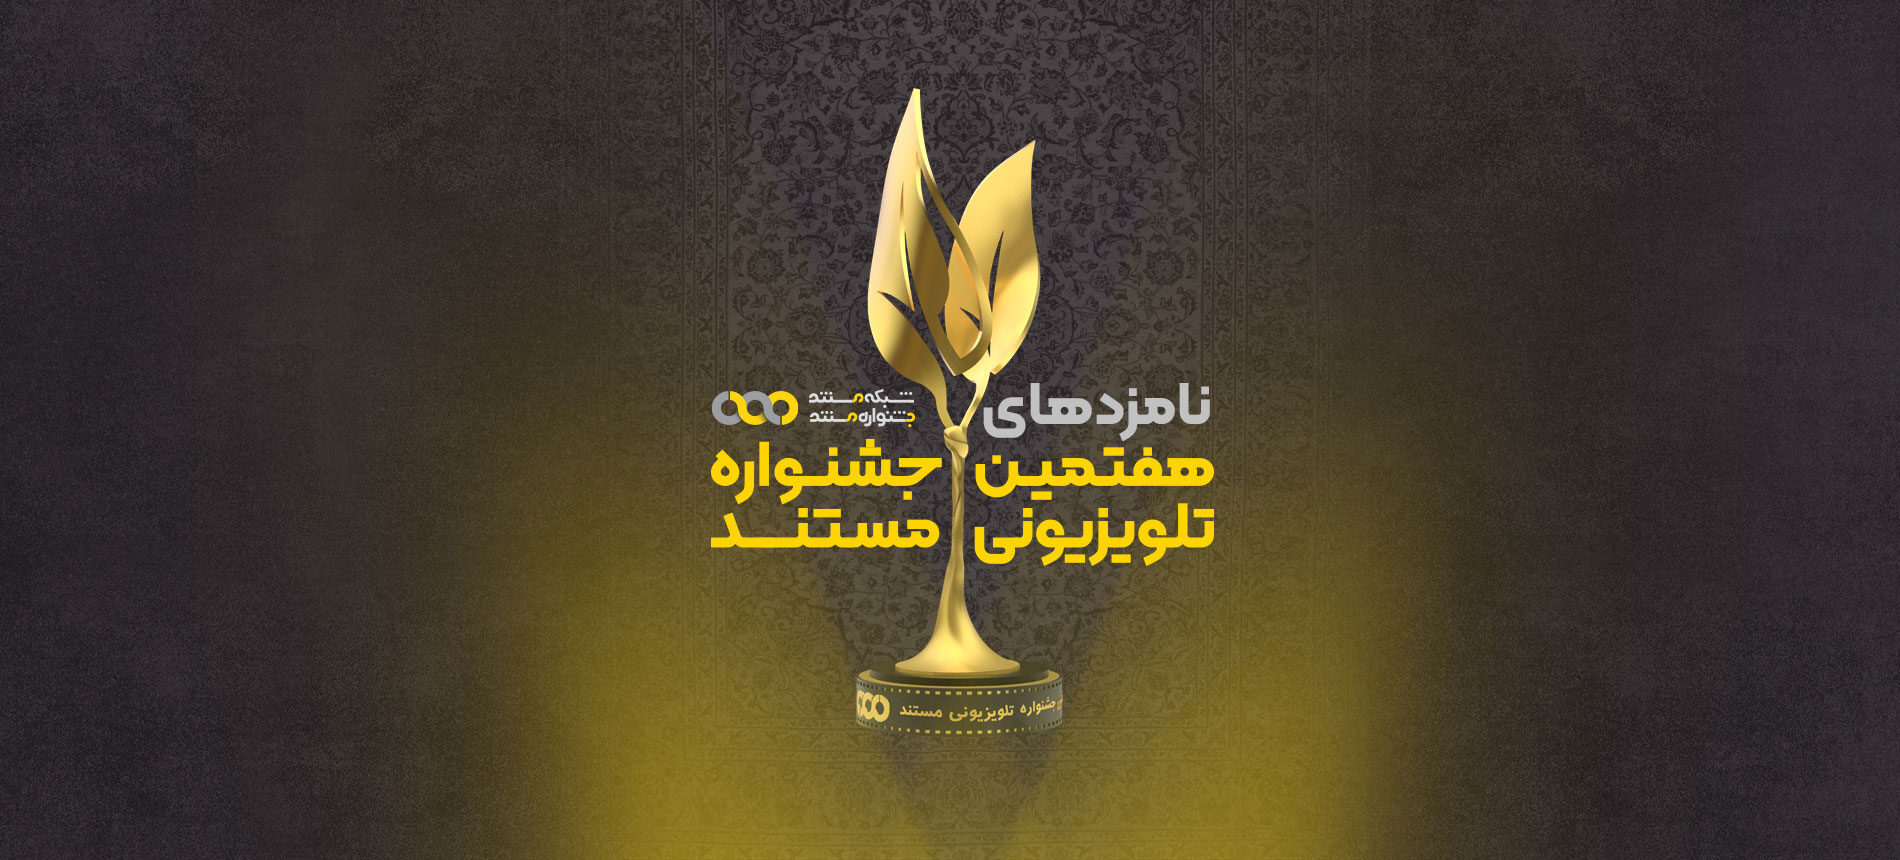 اعلام نامزدهای نهایی هفتمین جشنواره تلویزیونی مستند